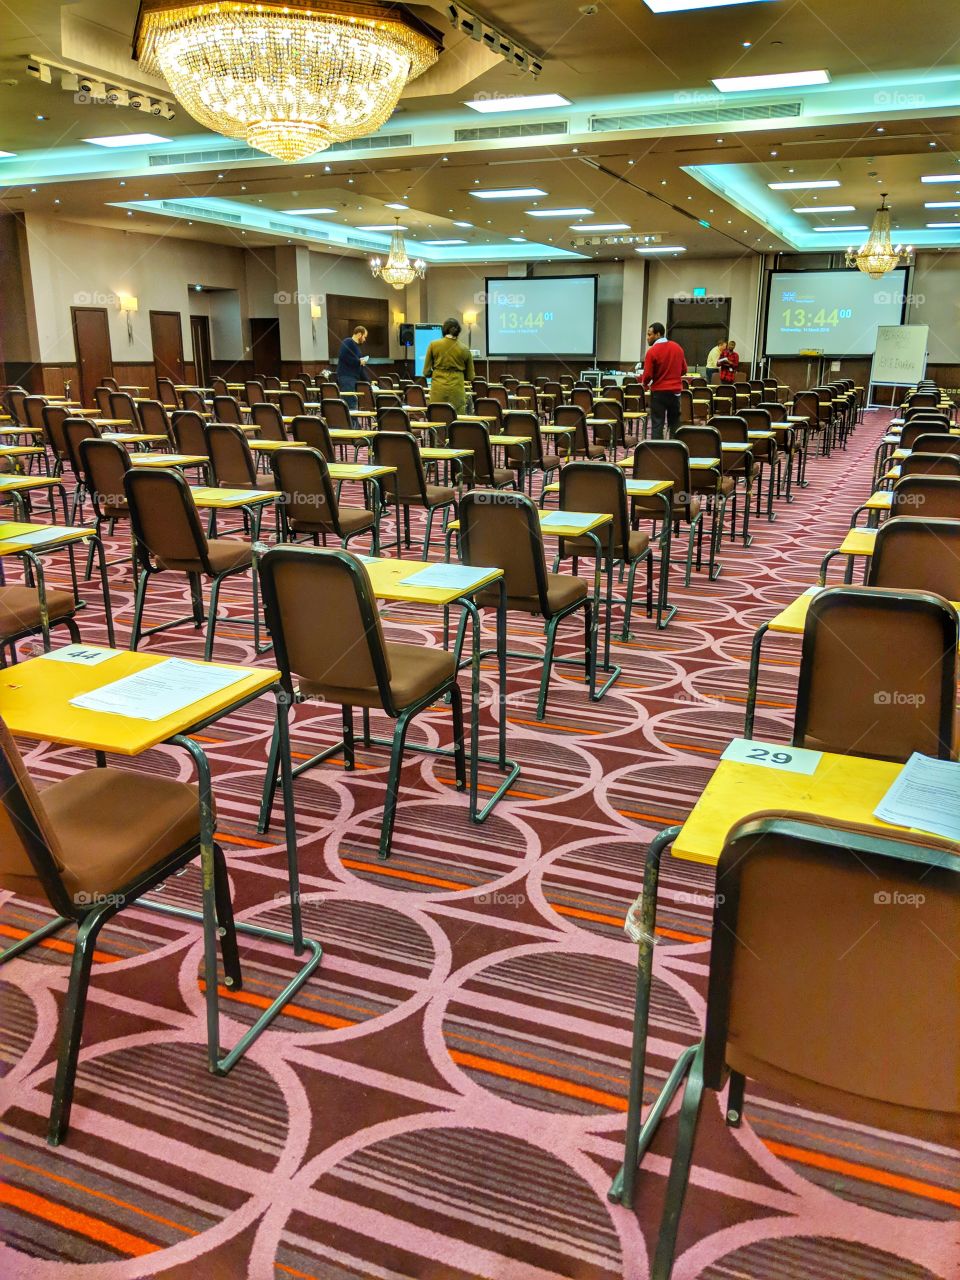 Examination Hall